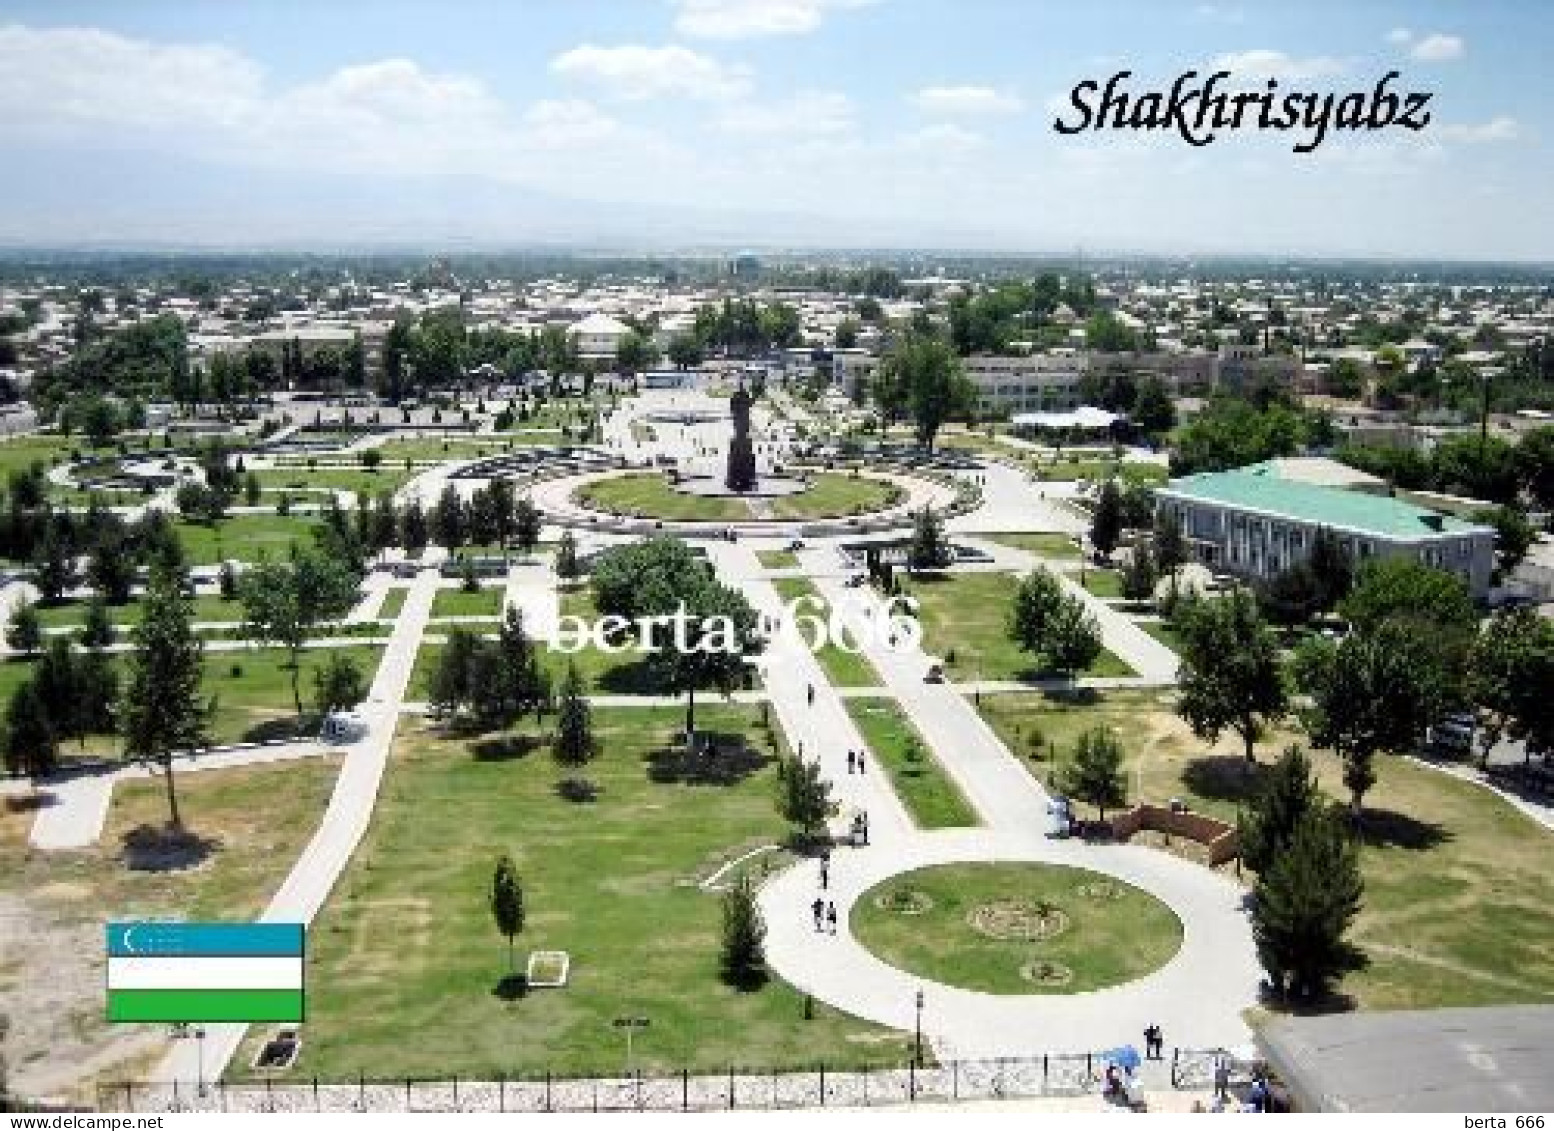 Uzbekistan Shakhrisabz Overview UNESCO New Postcard - Uzbekistán